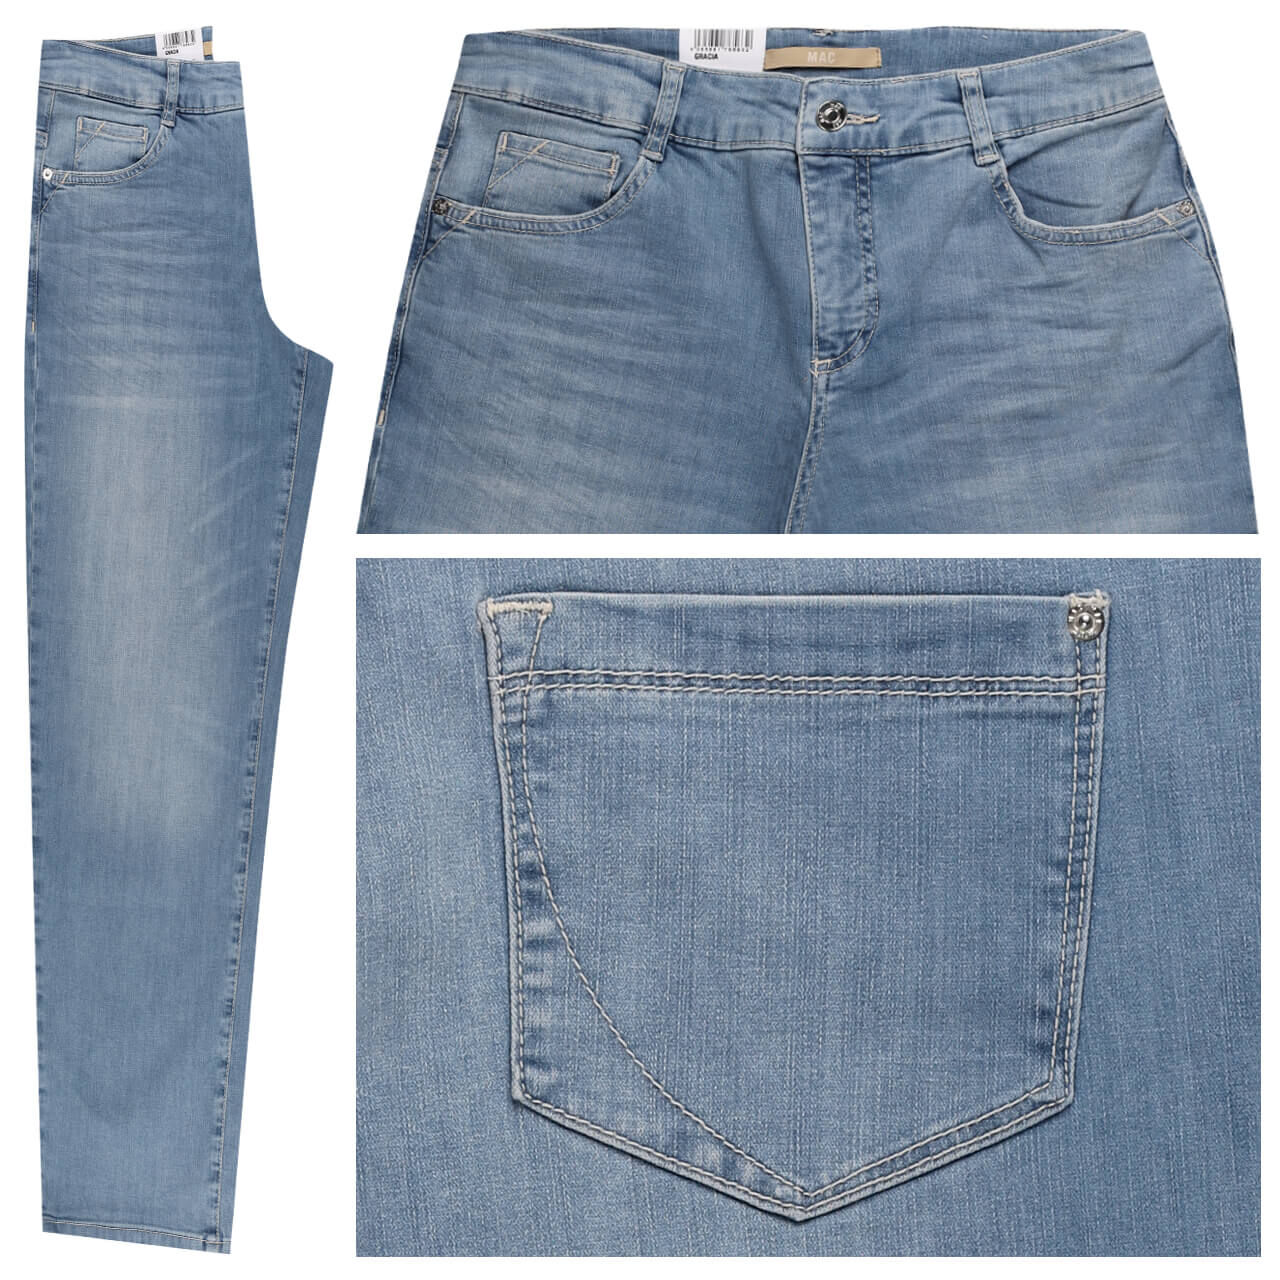 MAC Gracia Jeans light blue authentic wash